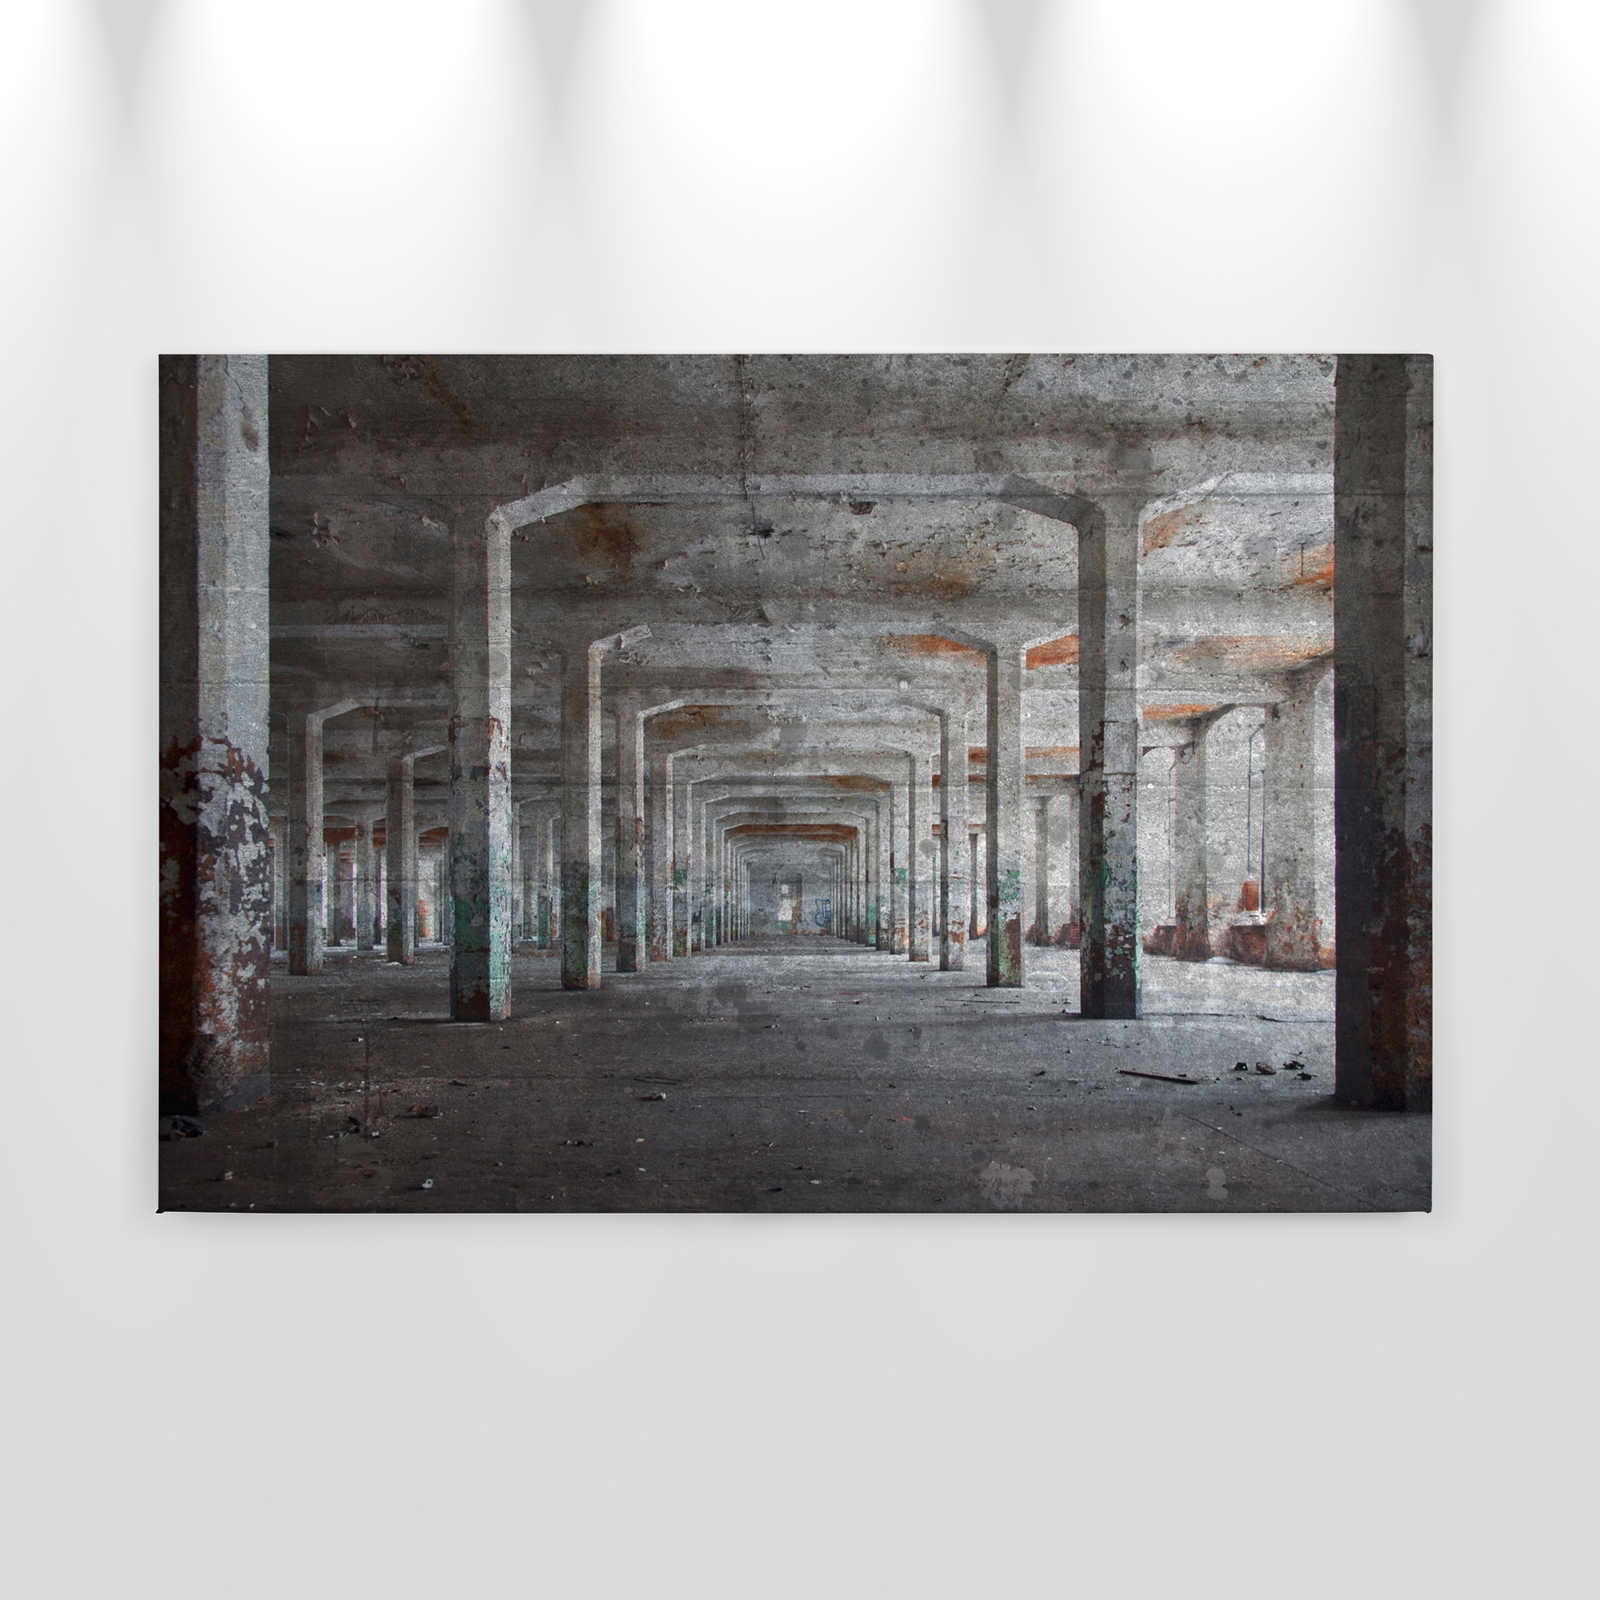             Canvas met oud betonnen gebouw met 3D-optiek - 0,90 m x 0,60 m
        